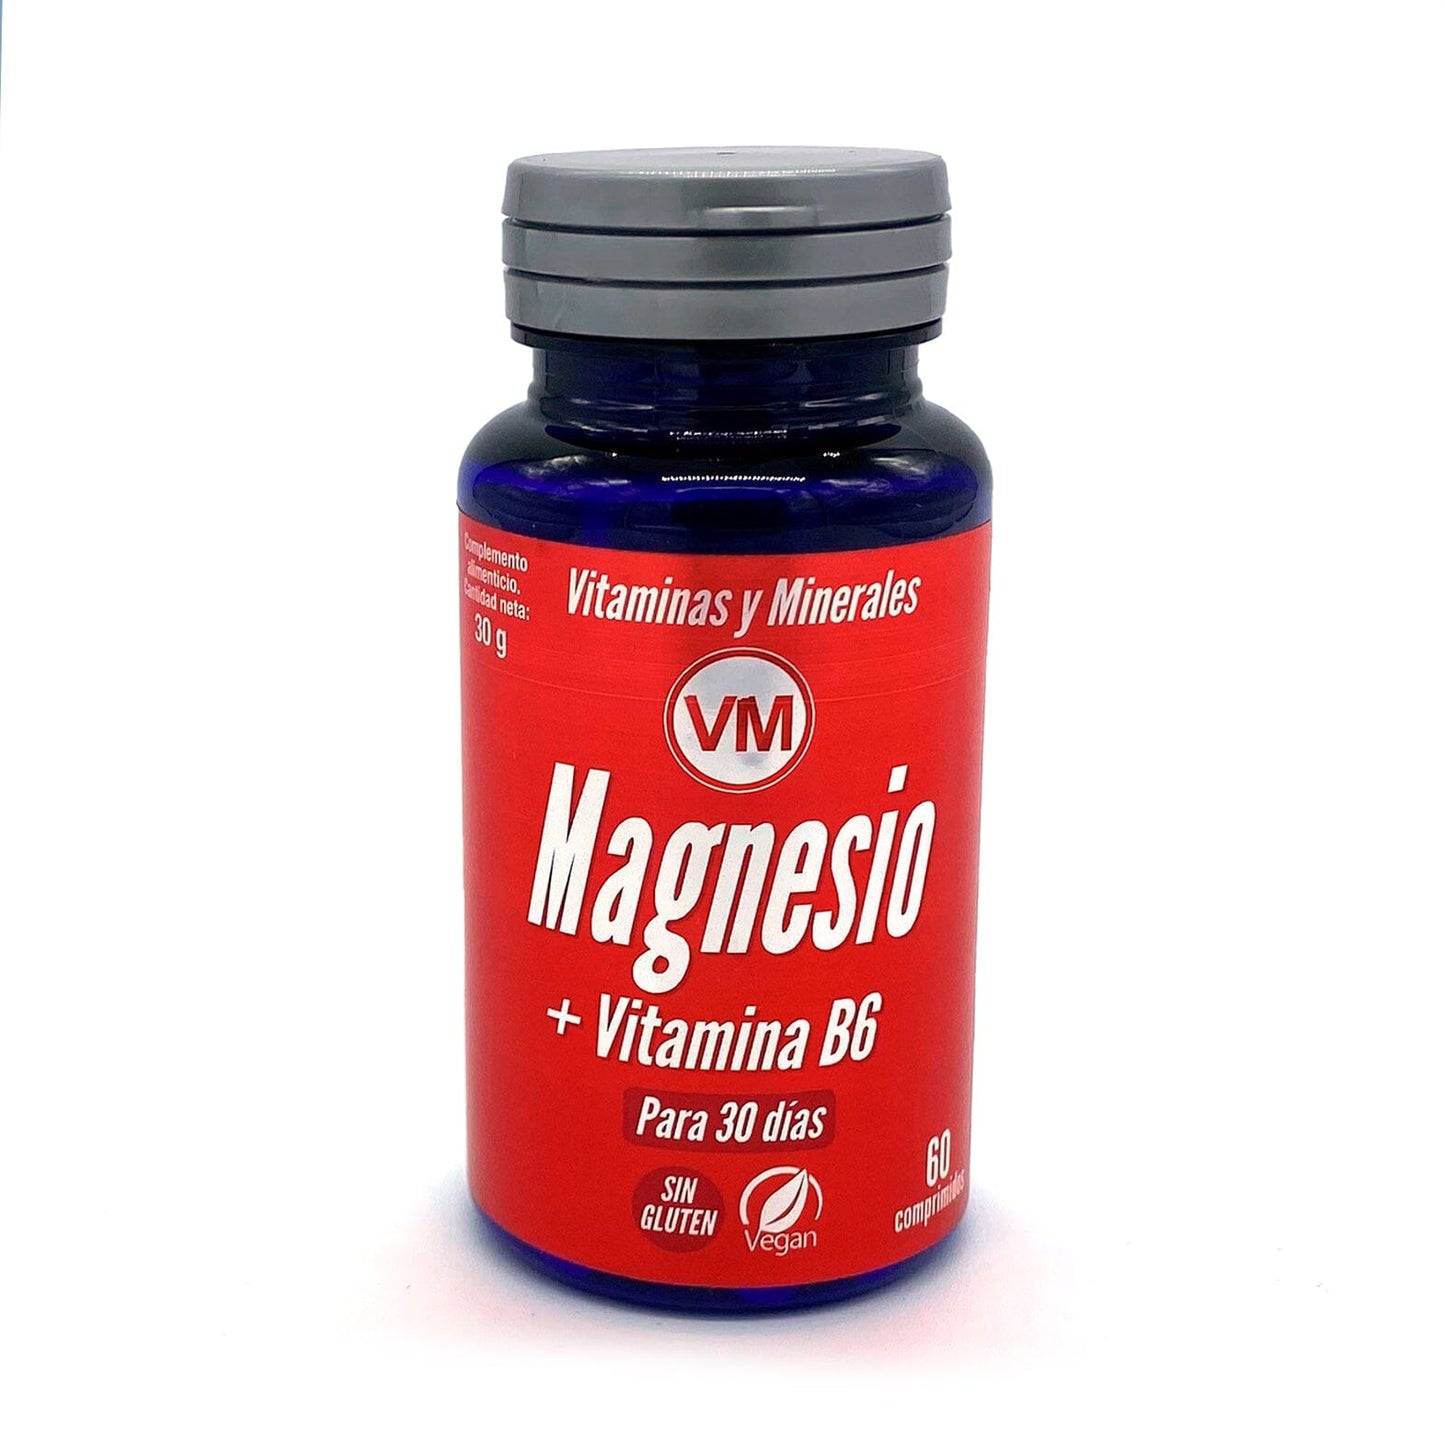 Magnesio + Vitamina B6 60 comprimidos | Ynsadiet - Dietetica Ferrer